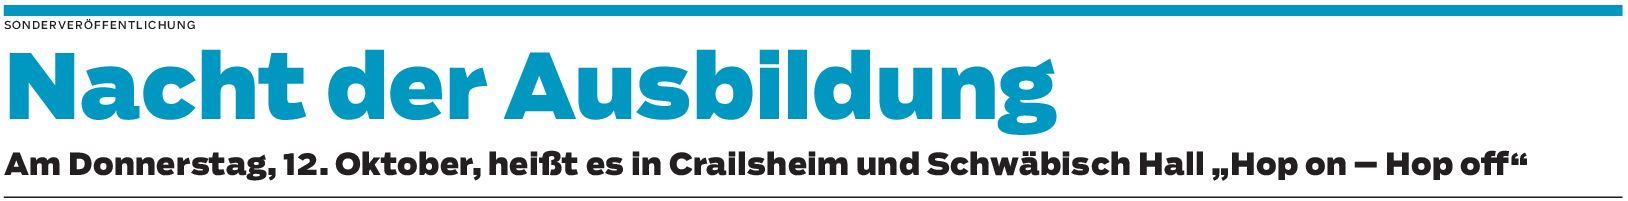 Nacht der Ausbildung in Crailsheim und Schwäbisch Hall: Unternehmen zeigen Präsenz